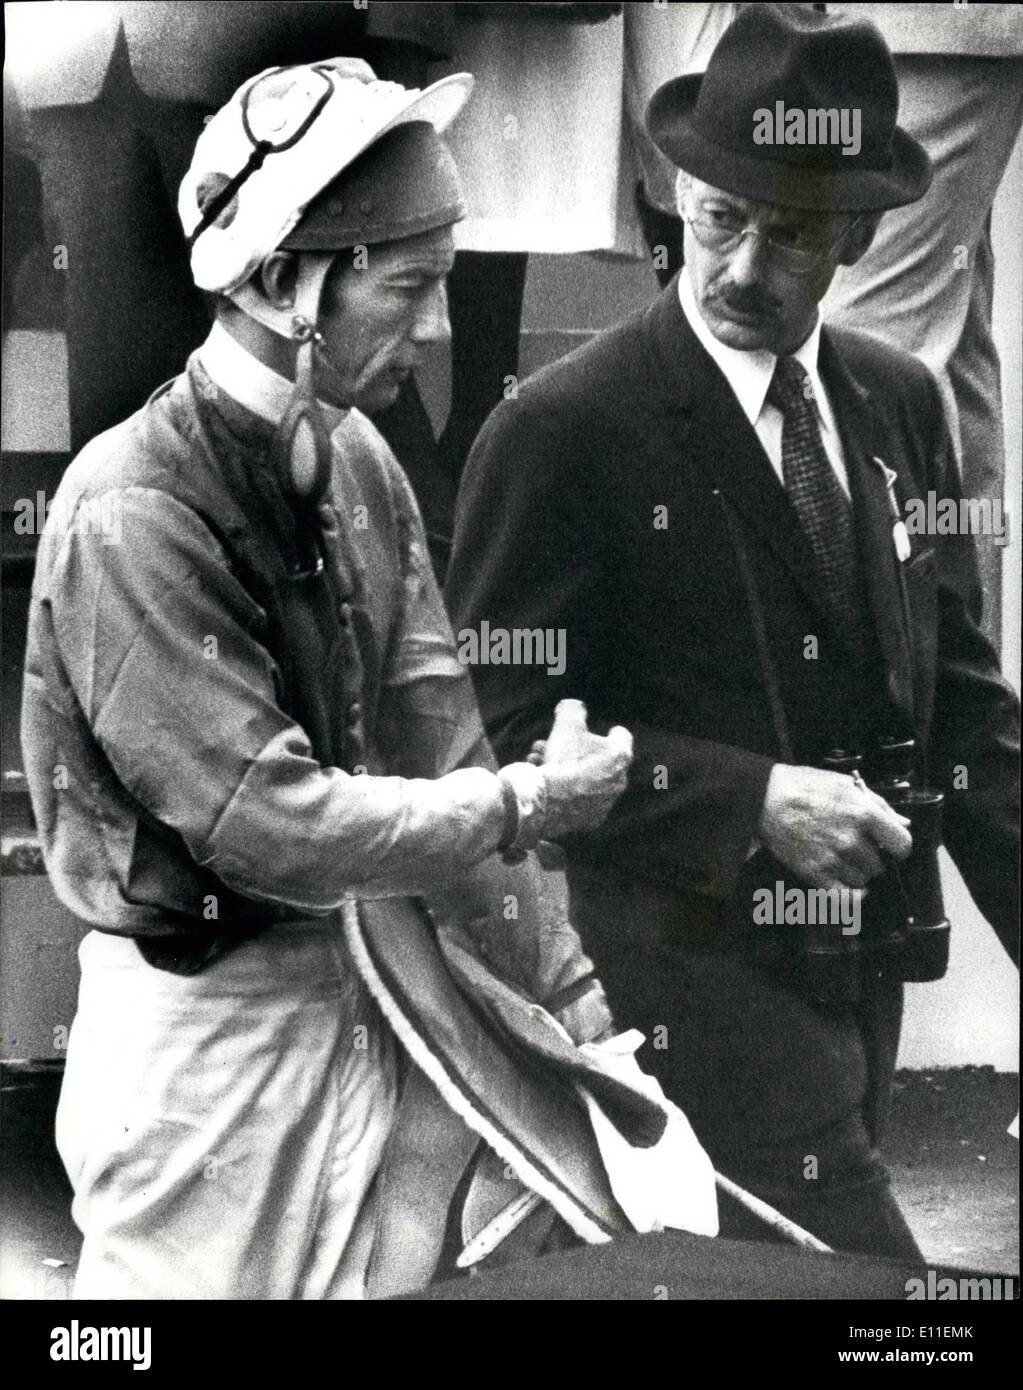 Giugno 06, 1977 - Royal la vittoria nelle querce. Queen's cavallo 'Dunpermiline'' vince. C'era un diritto royal vittoria in rovere a Epsom oggi, quando la regina del cavallo della 'Dunfermline'' cavalcato da W. Carsen, ha vinto la gara. ''Congelare il segreto (G. Duttri) era secondo e vagamente deb(B. Raymond) è terzo. La regina non era a Epsom vedere il suo cavallo win. Loter piggott fu gettato dal preferito, Durtal, prima della gara e non ha preso parte. mostra fotografica di Lester Piggott raffigurata nell'unsaddling ensosure, dopo essere stato portato via in ambulanza dopo essere stati gettati da il preferito Dutral prima della gara. Foto Stock